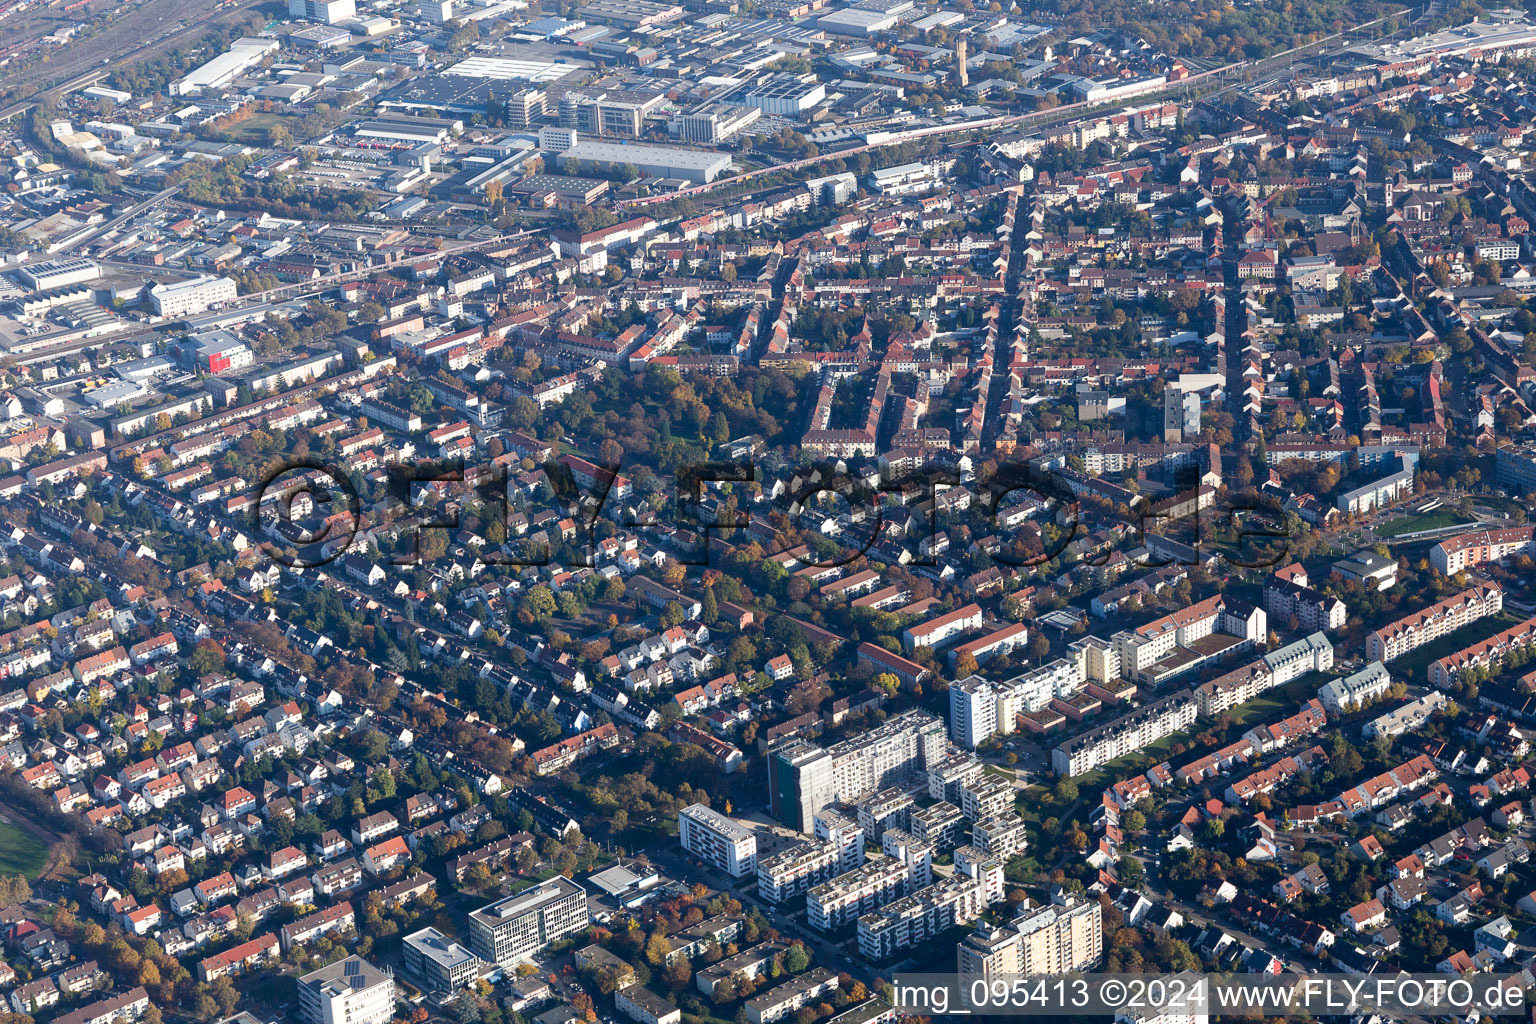 Luftbild von Ortsteil Almenhof in Mannheim im Bundesland Baden-Württemberg, Deutschland